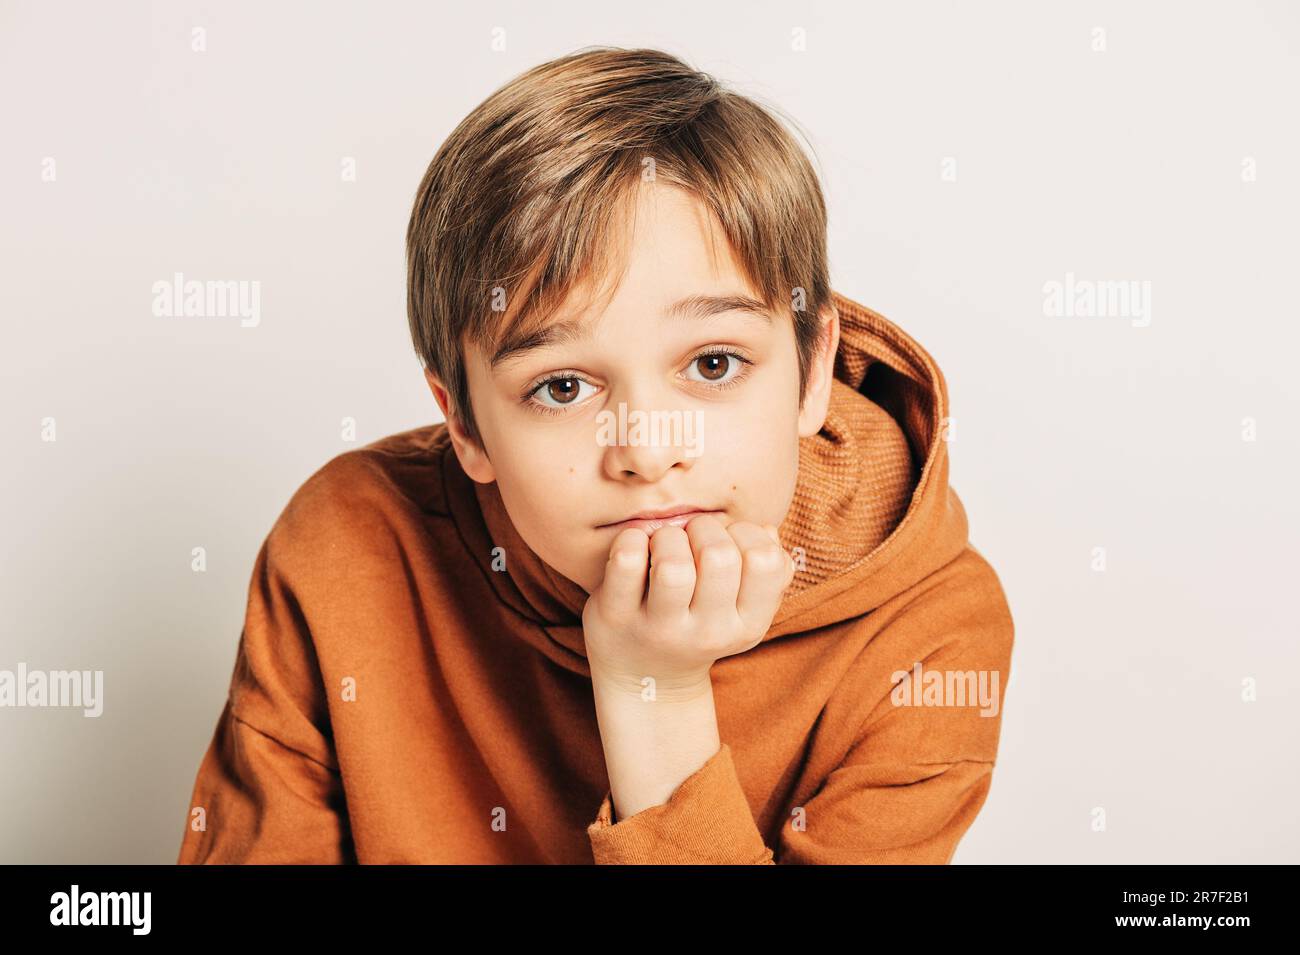 Photo studio d'un beau garçon de 10 ans aux cheveux blonds, portant un sweat à capuche marron, posé sur fond blanc Banque D'Images